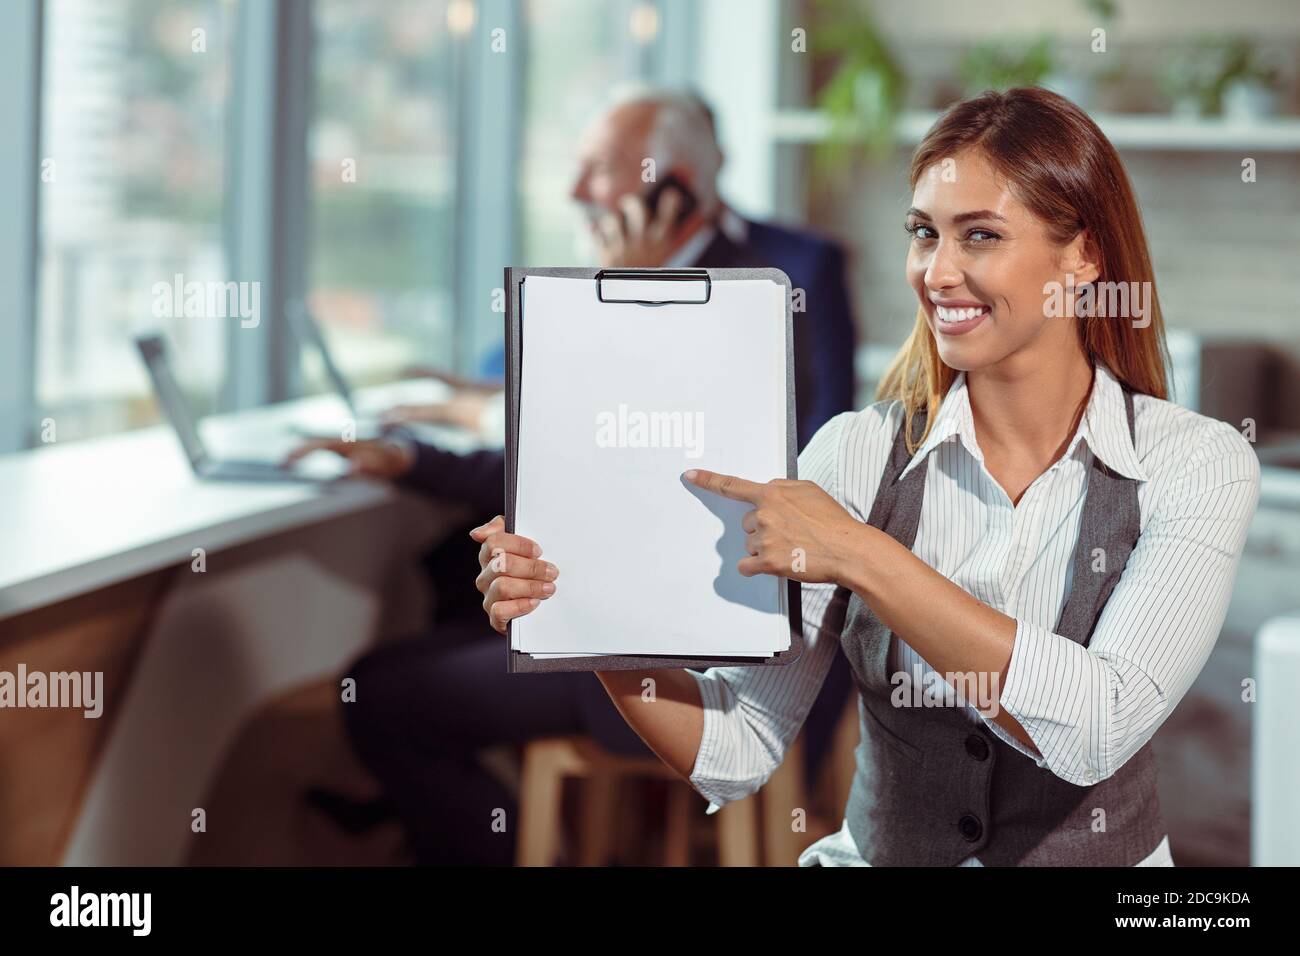 La mujer de negocios tiene papel blanco. Joven sonriendo. Foto de stock